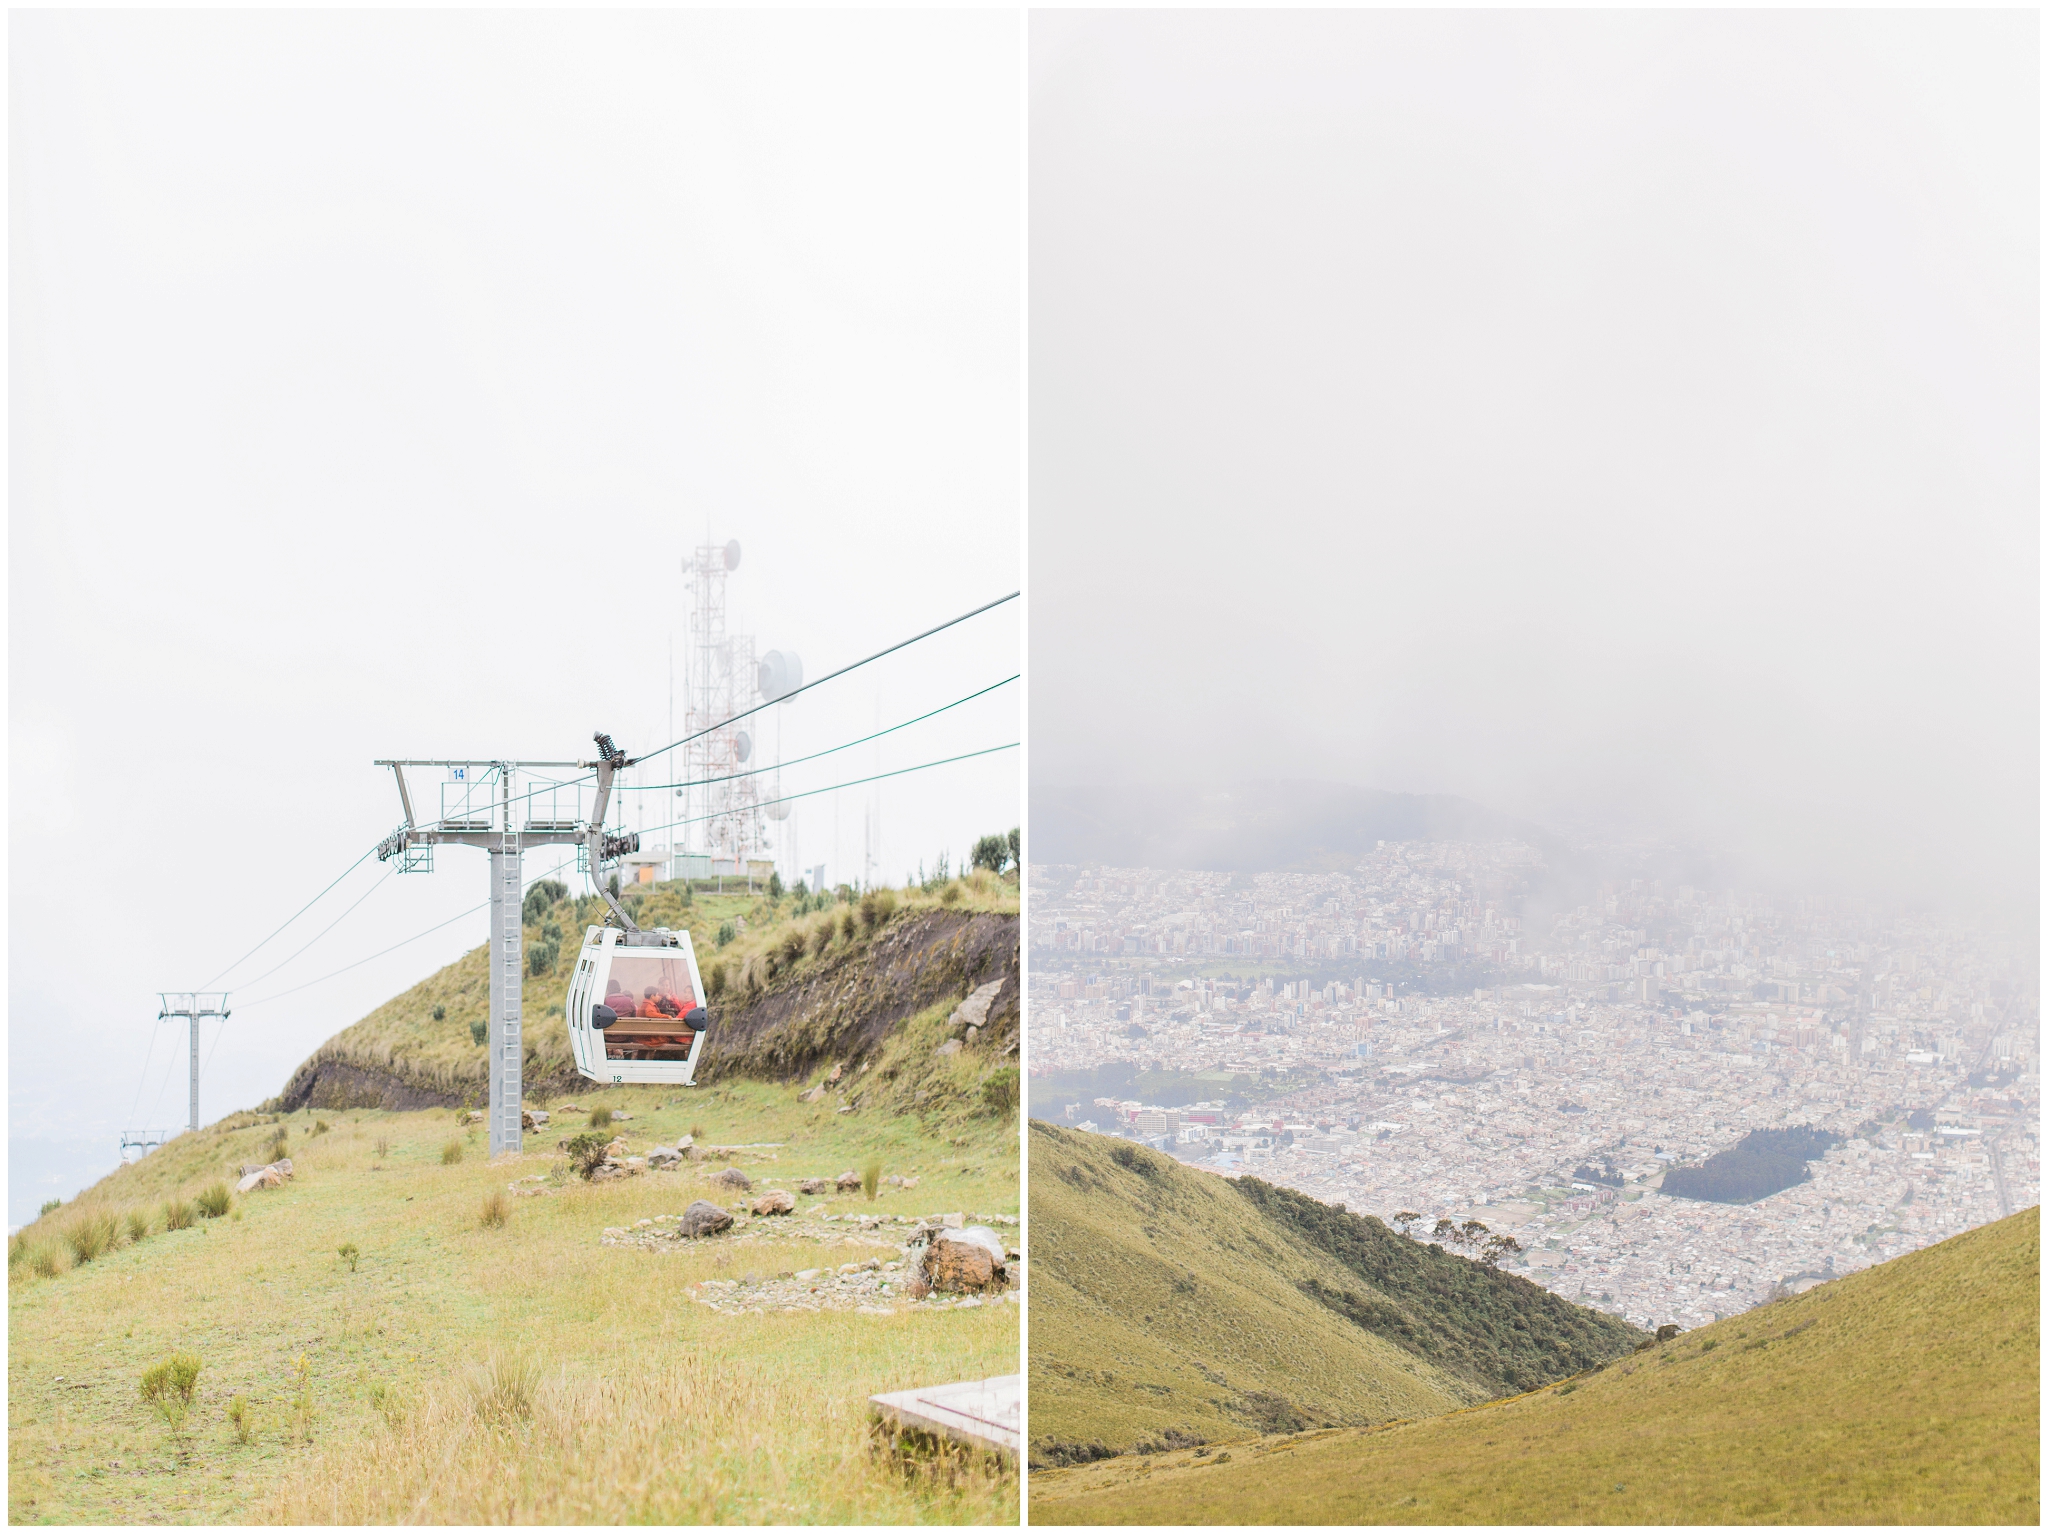 Quito, Ecuador | ©Fleckography 2015 www.fleckography.com, www.morningsbythesea.com